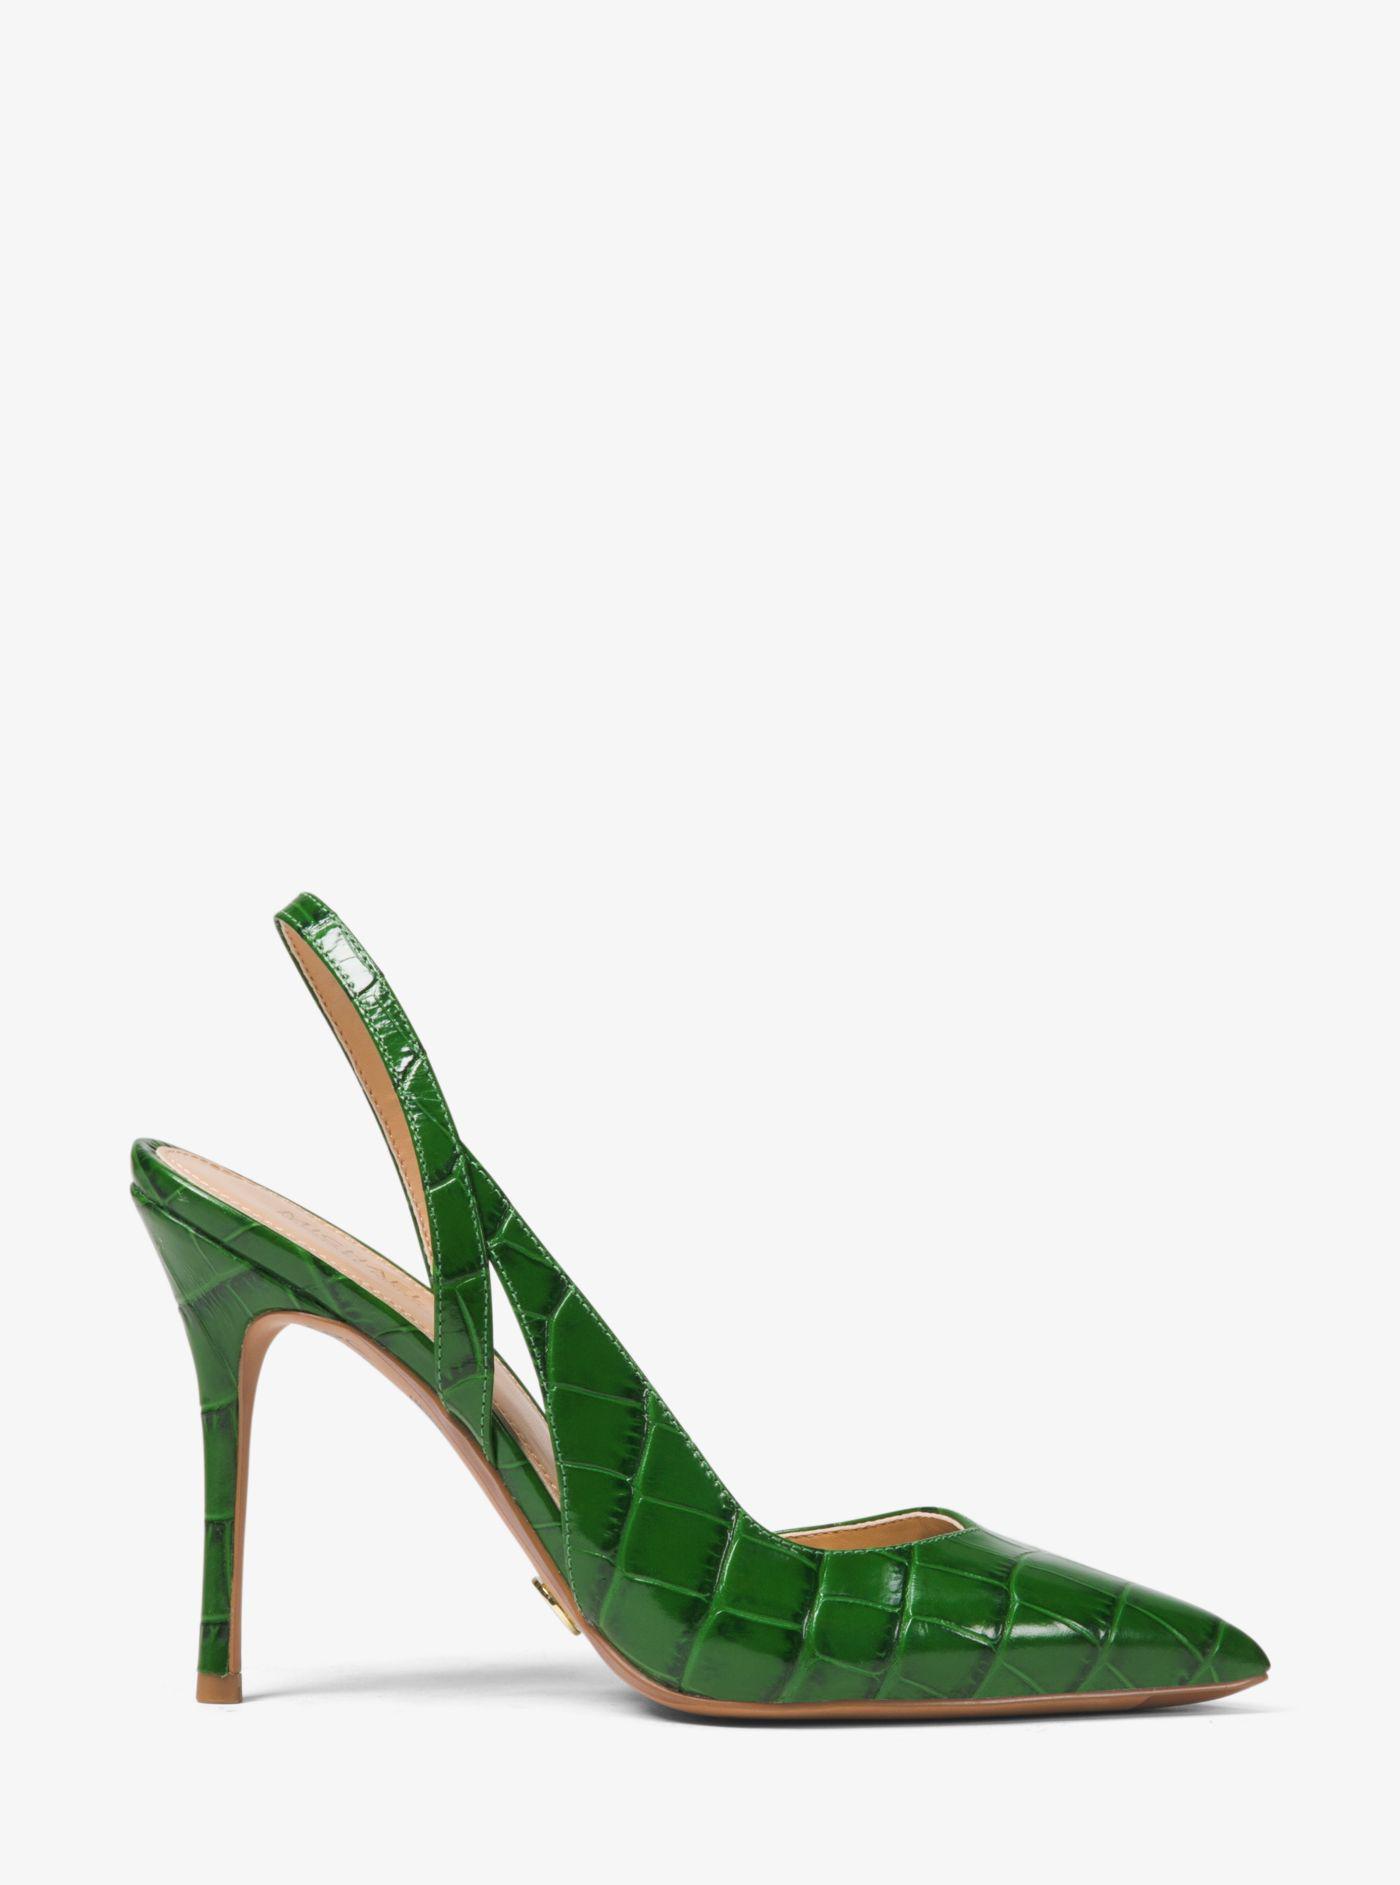 michael kors green heels online -